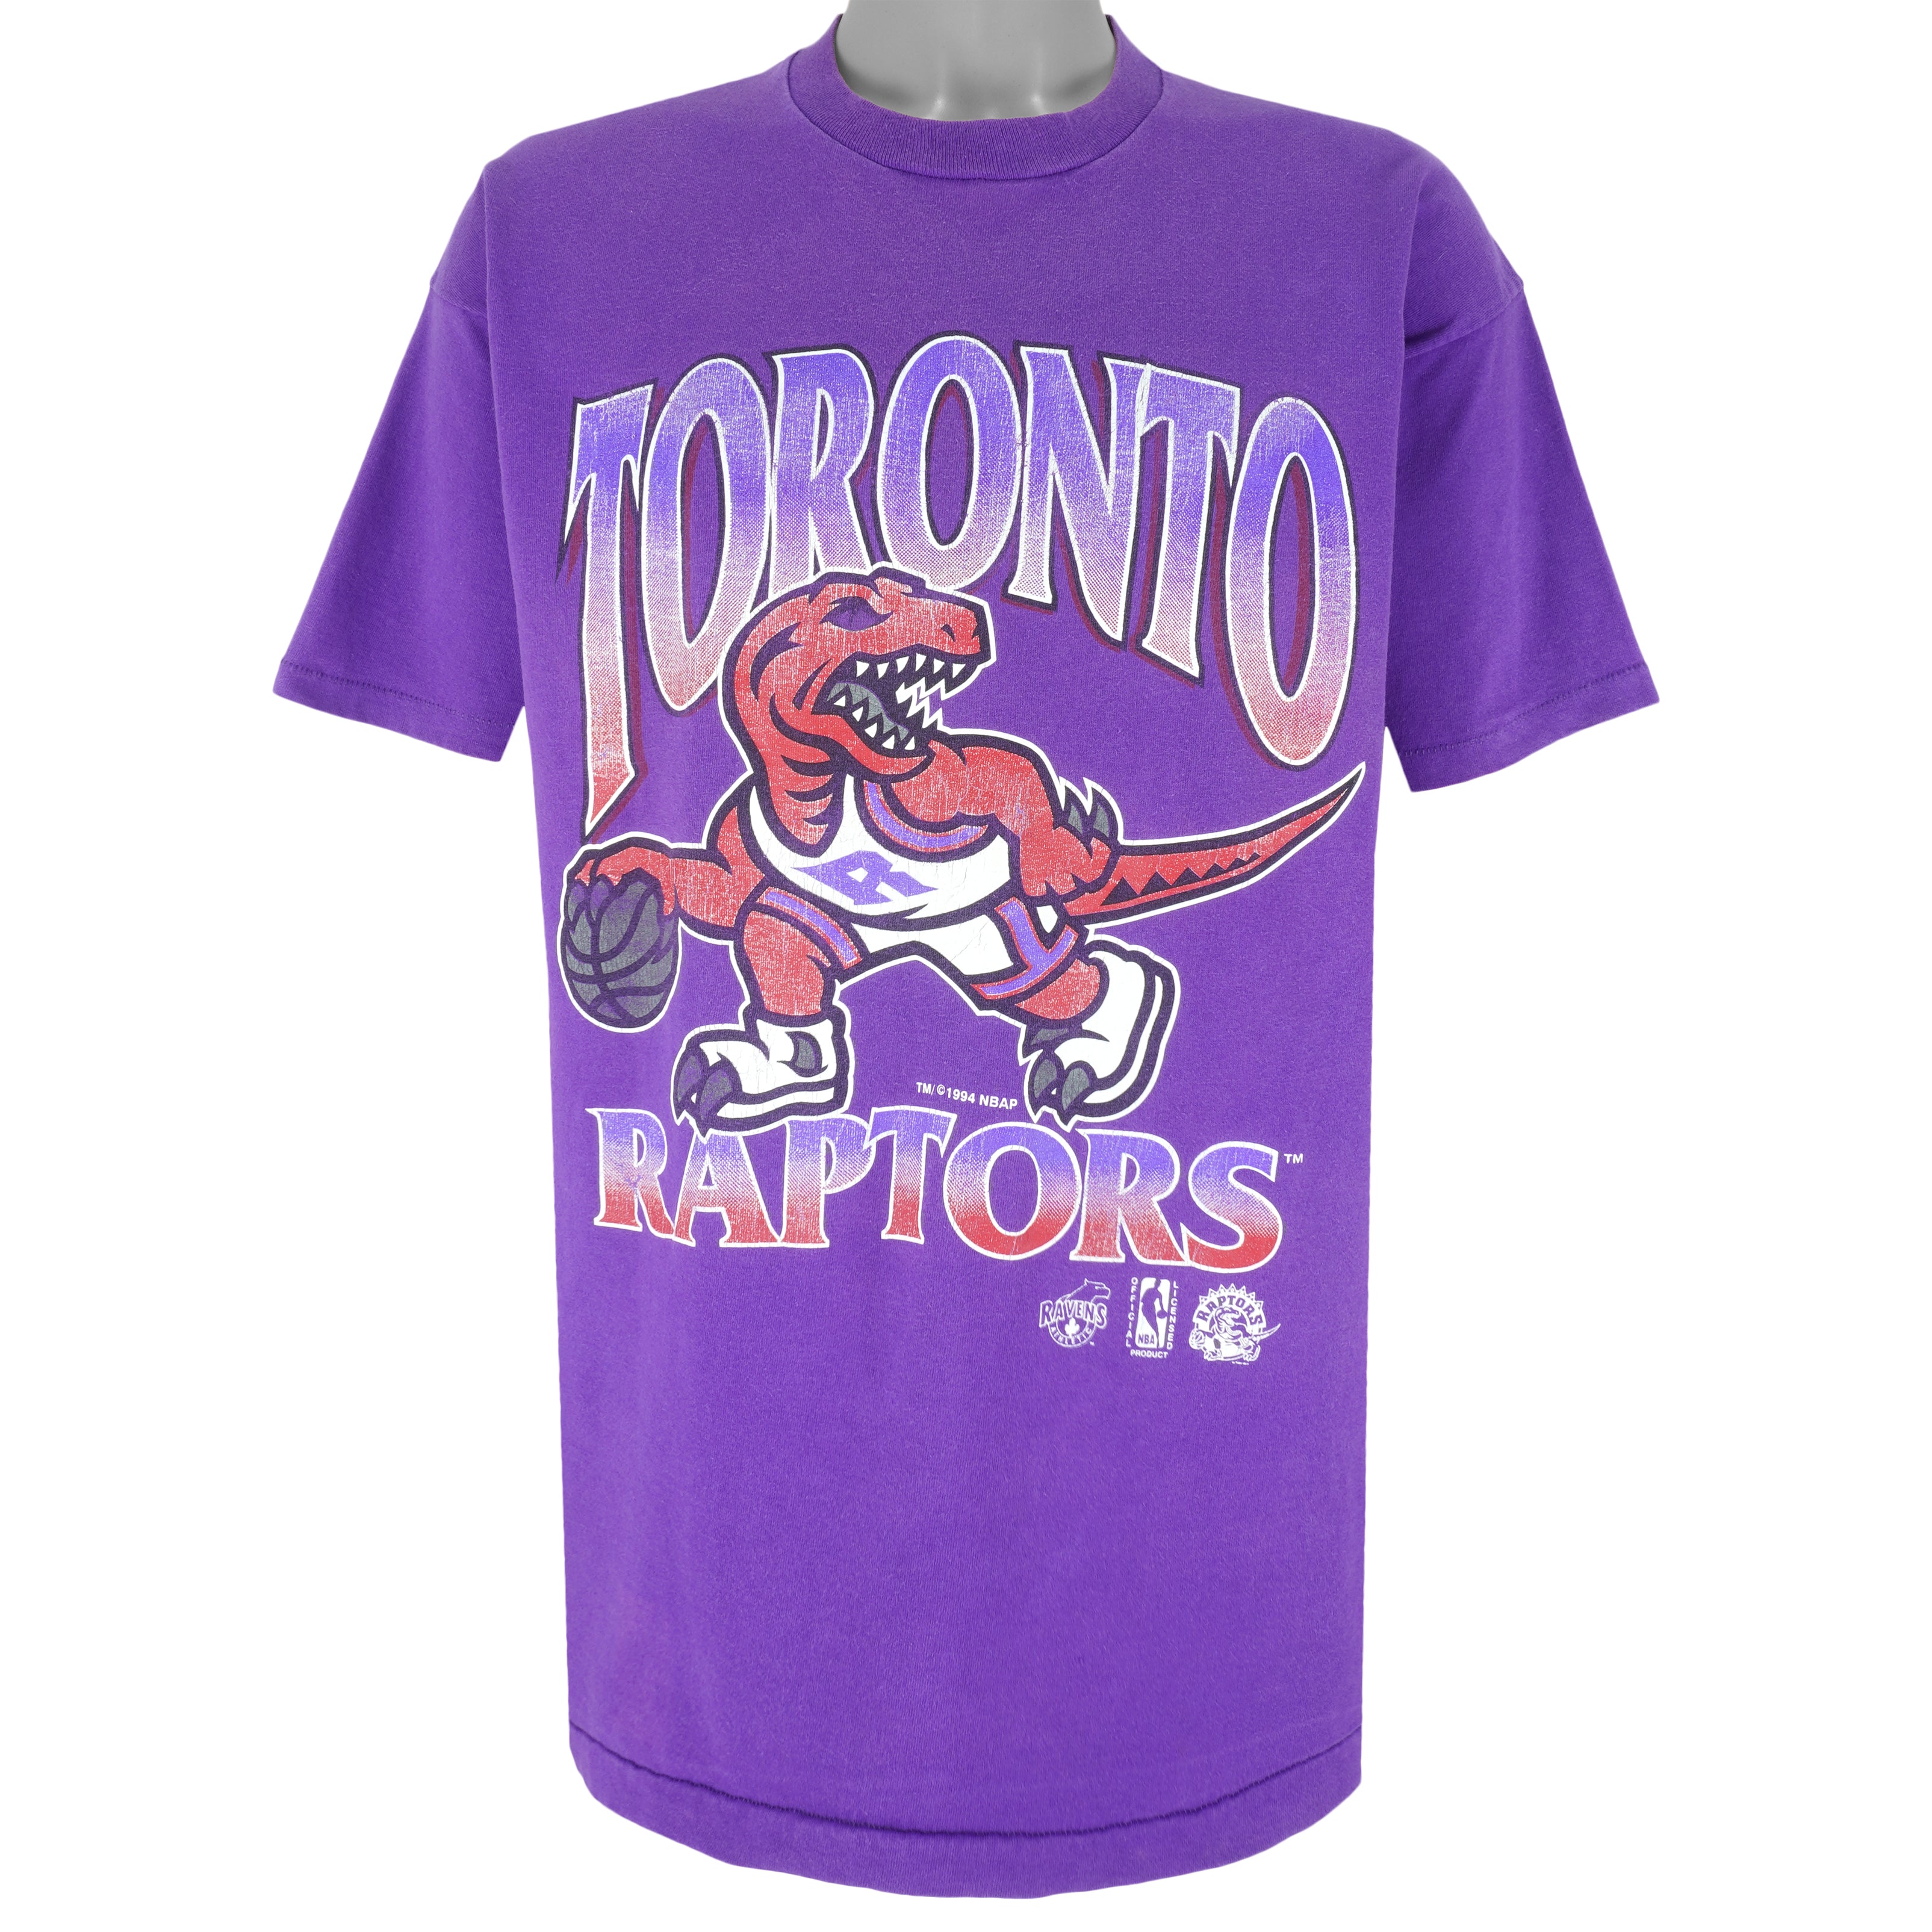 Vintage Vintage 90's Toronto Raptors NBA Sweatshirt